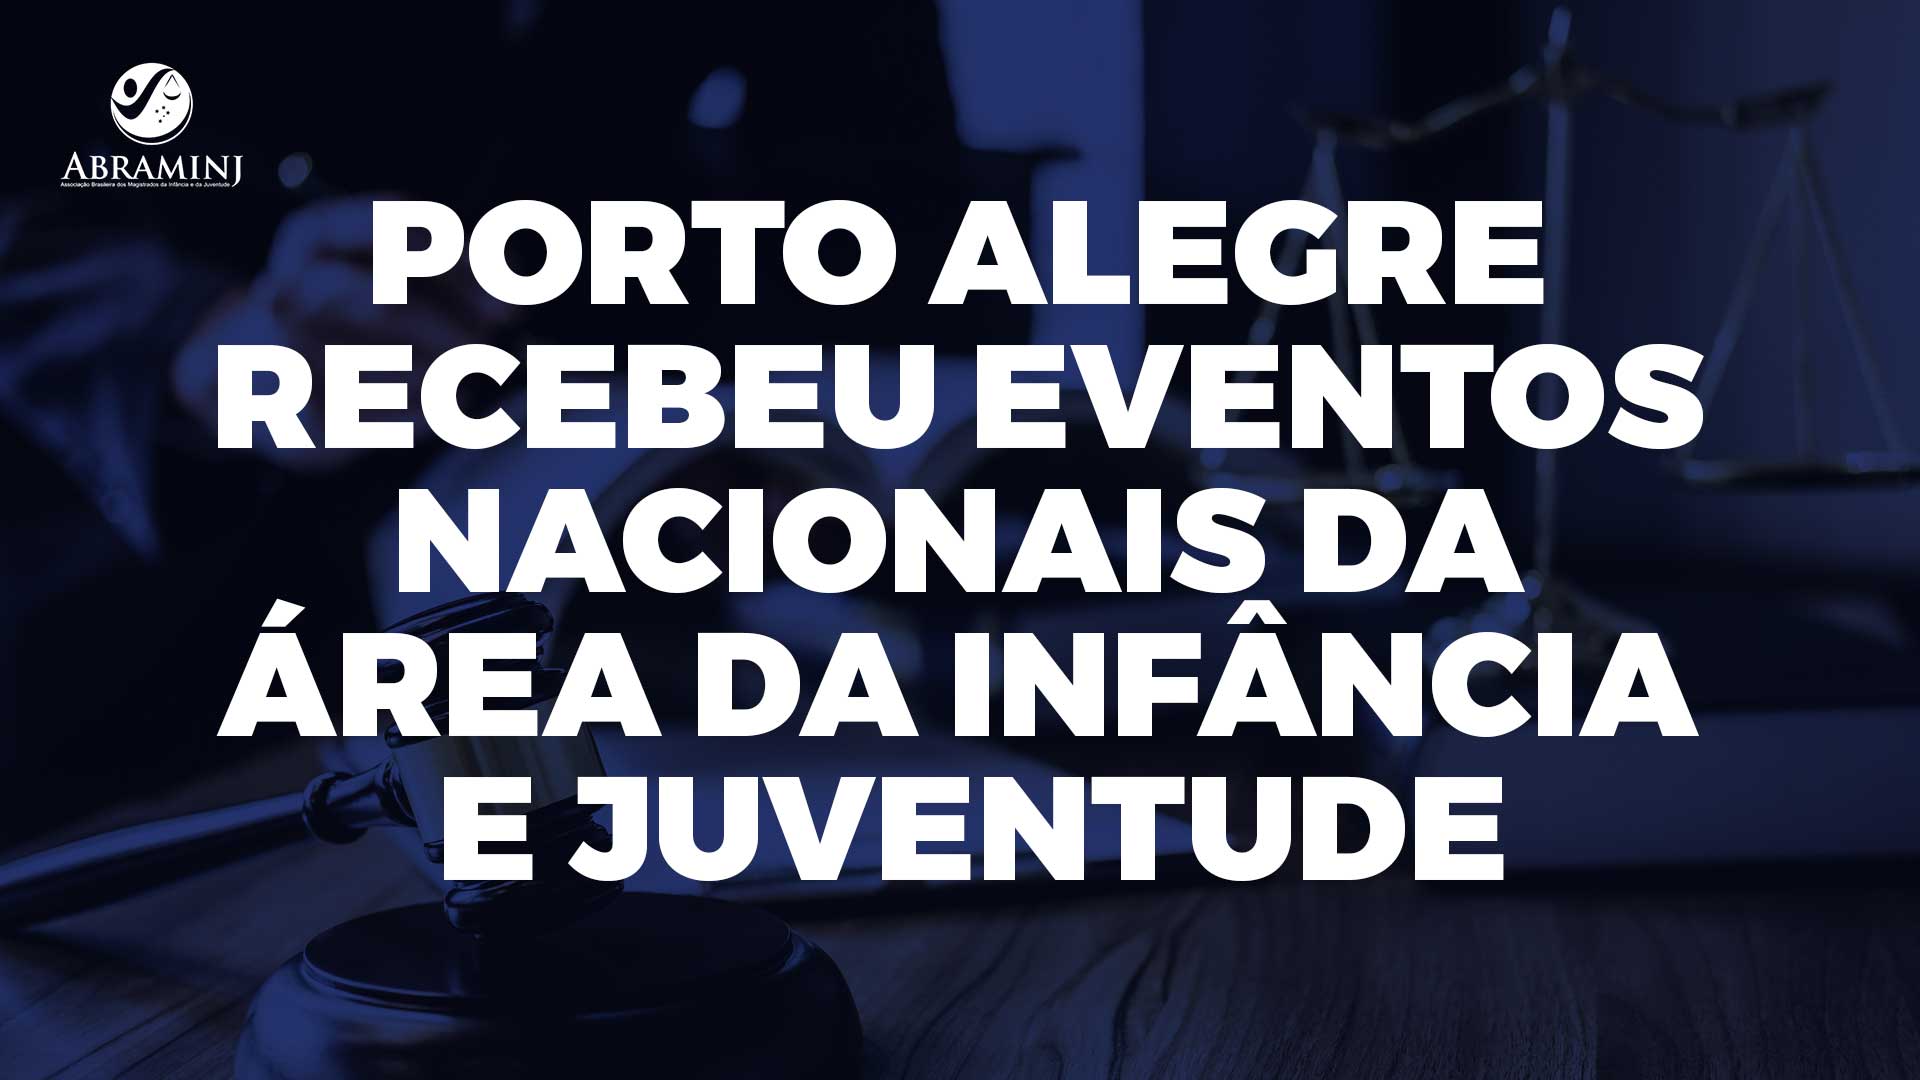 Porto Alegre recebeu eventos nacionais da área da Infância e Juventude